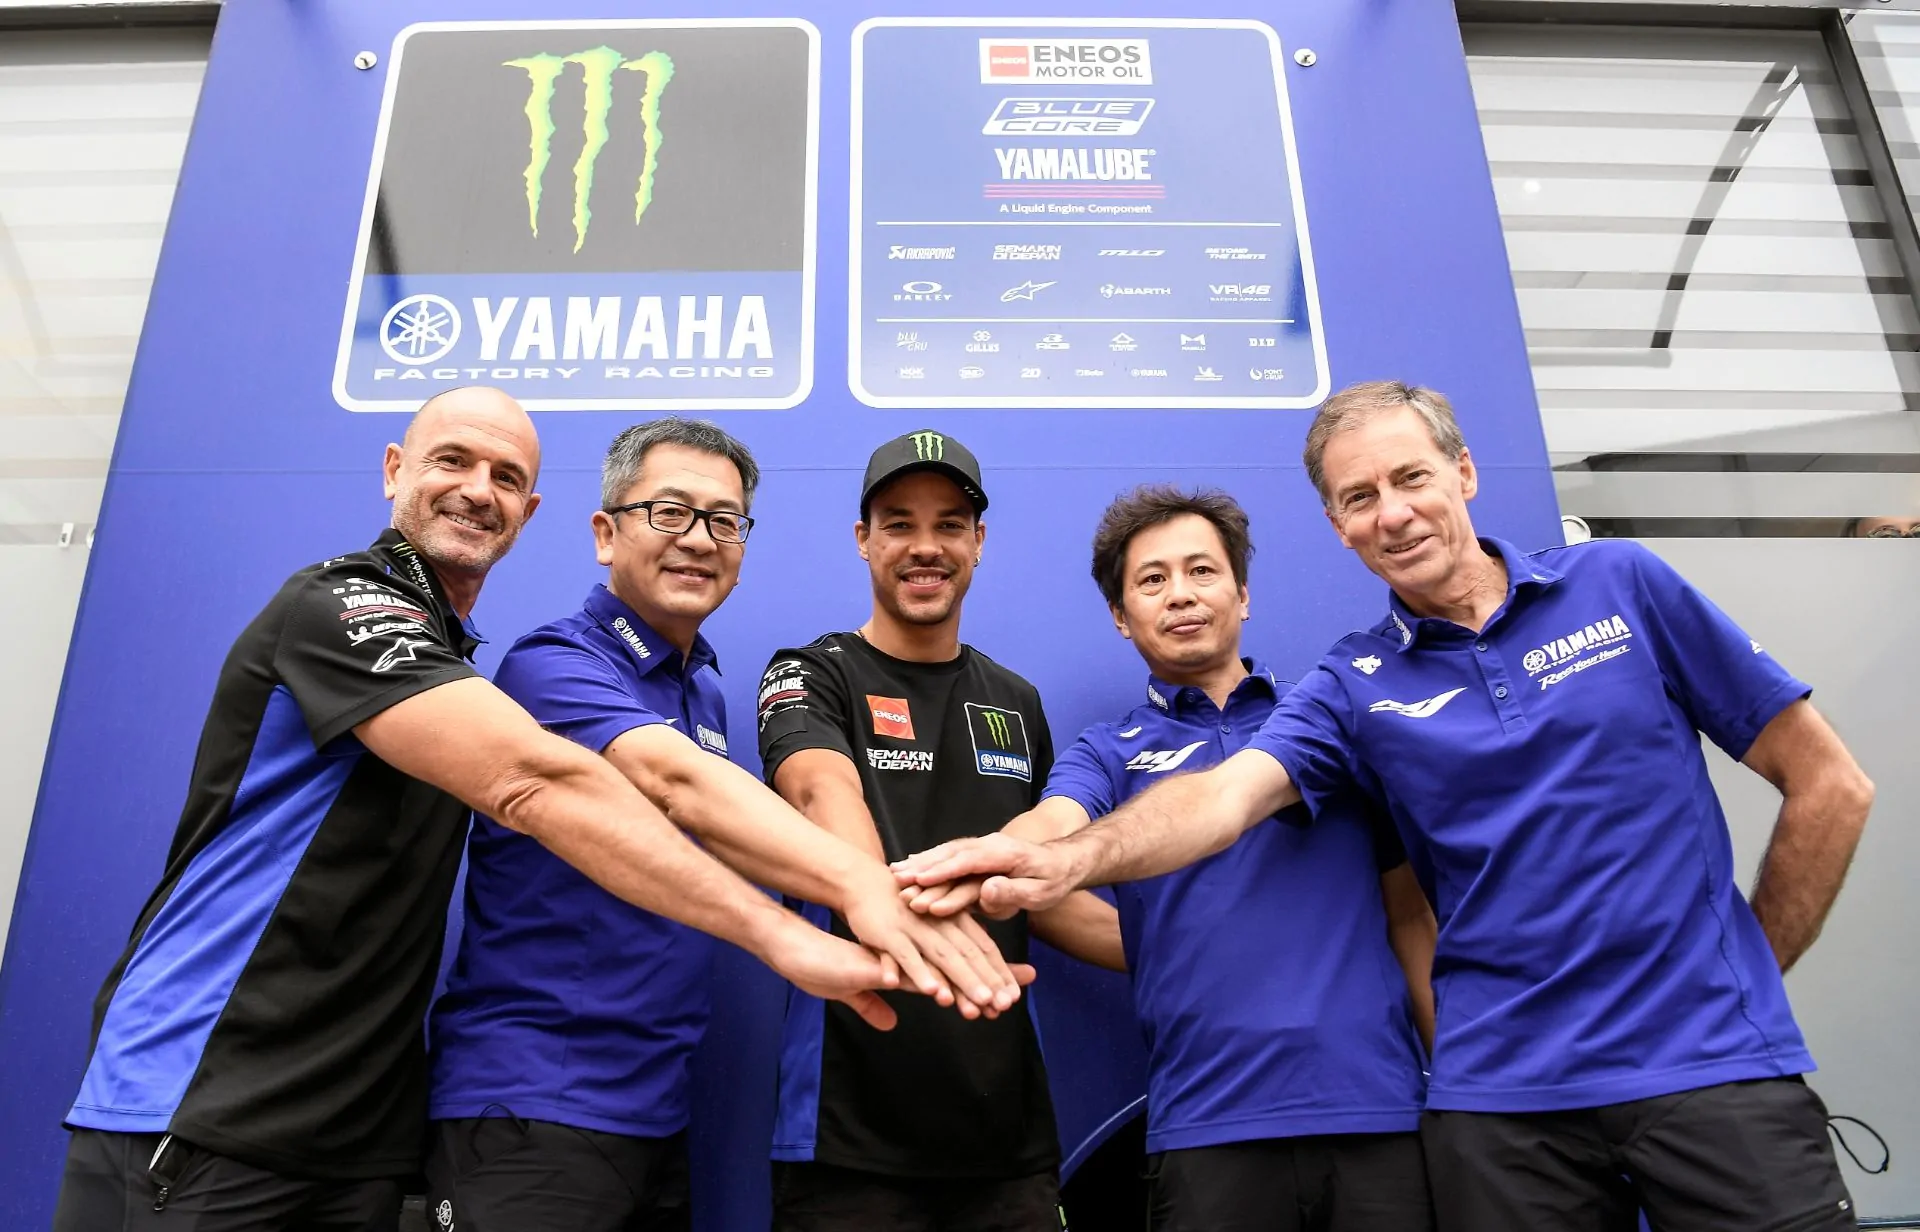 Franco Morbidelli và Andrea Dovisioso gia nhập đội hình Yamaha